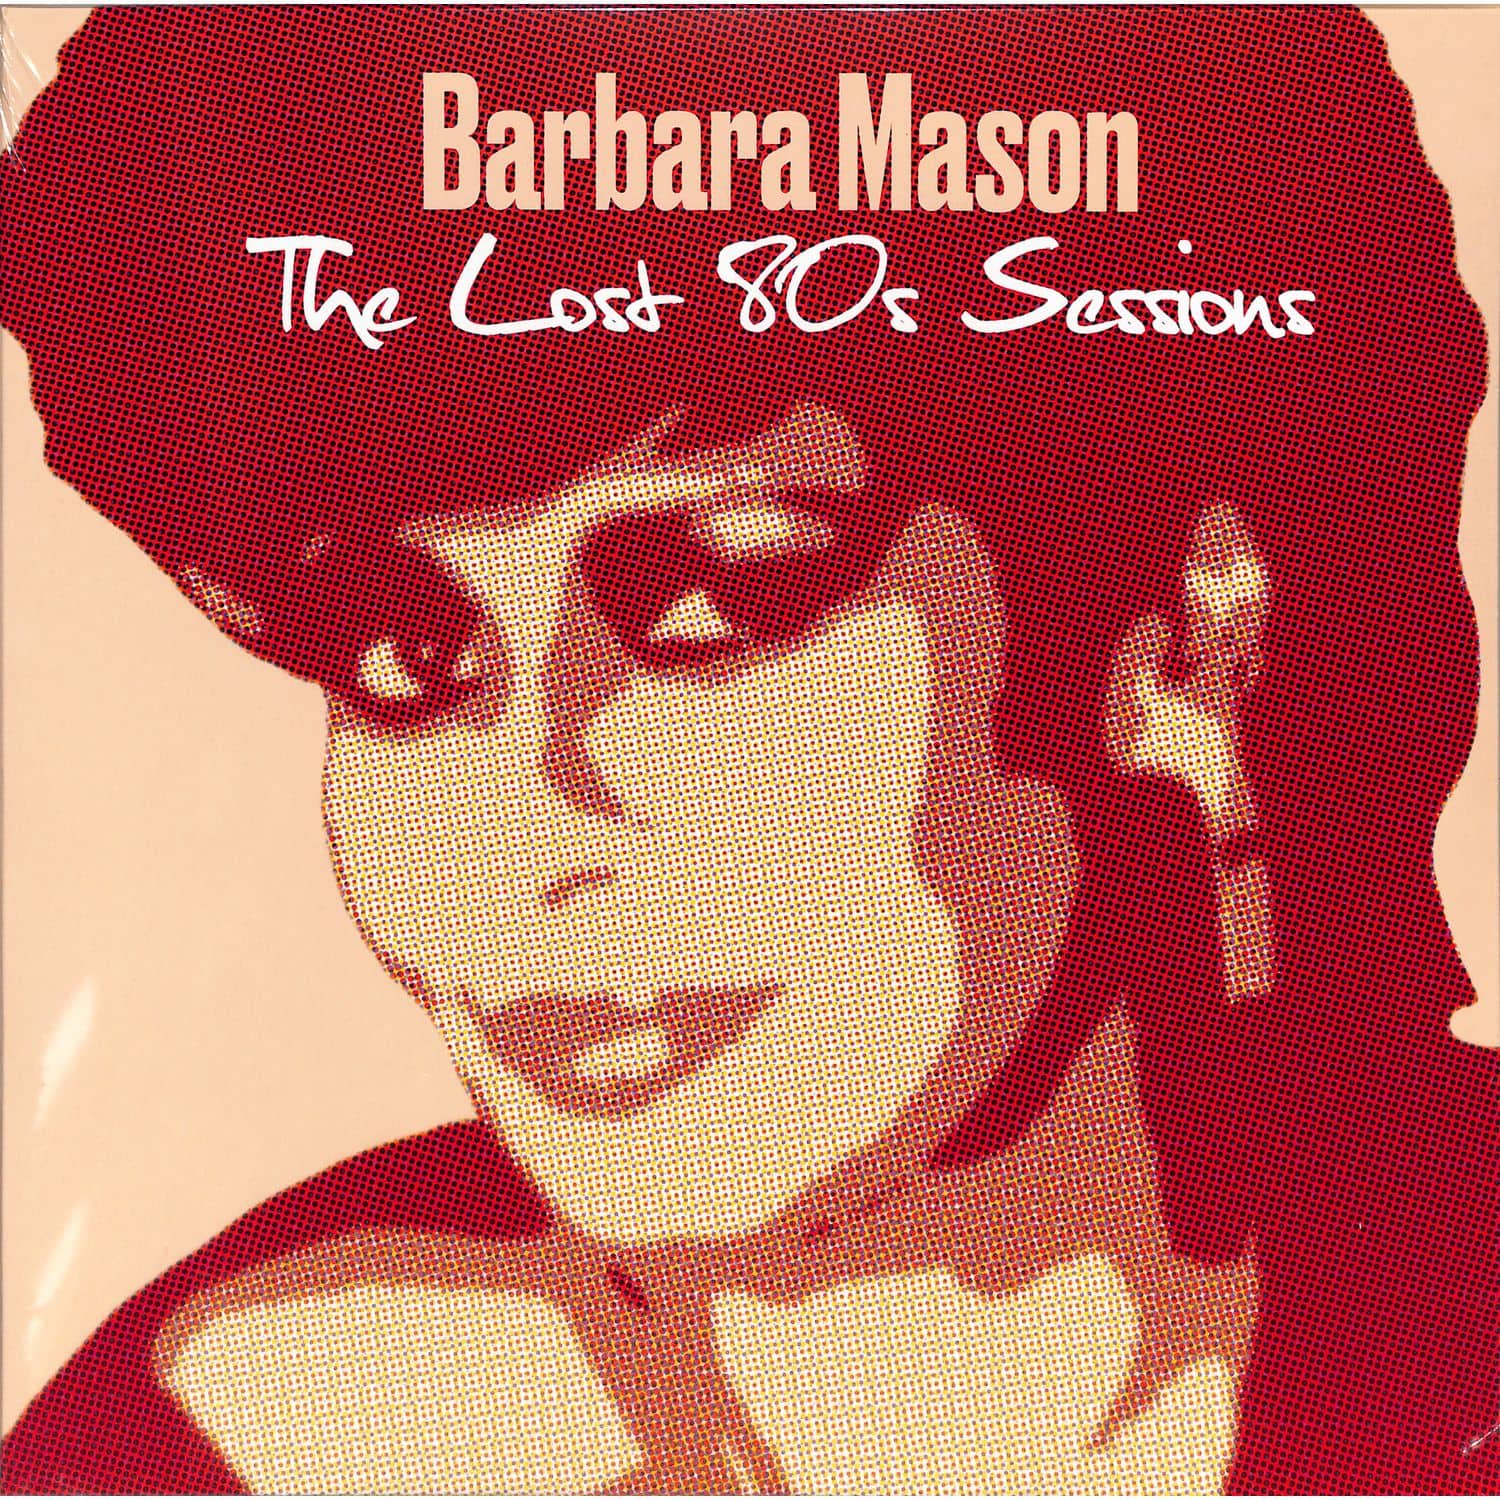 Barbara Mason - THE LOST 80S SESSIONS 